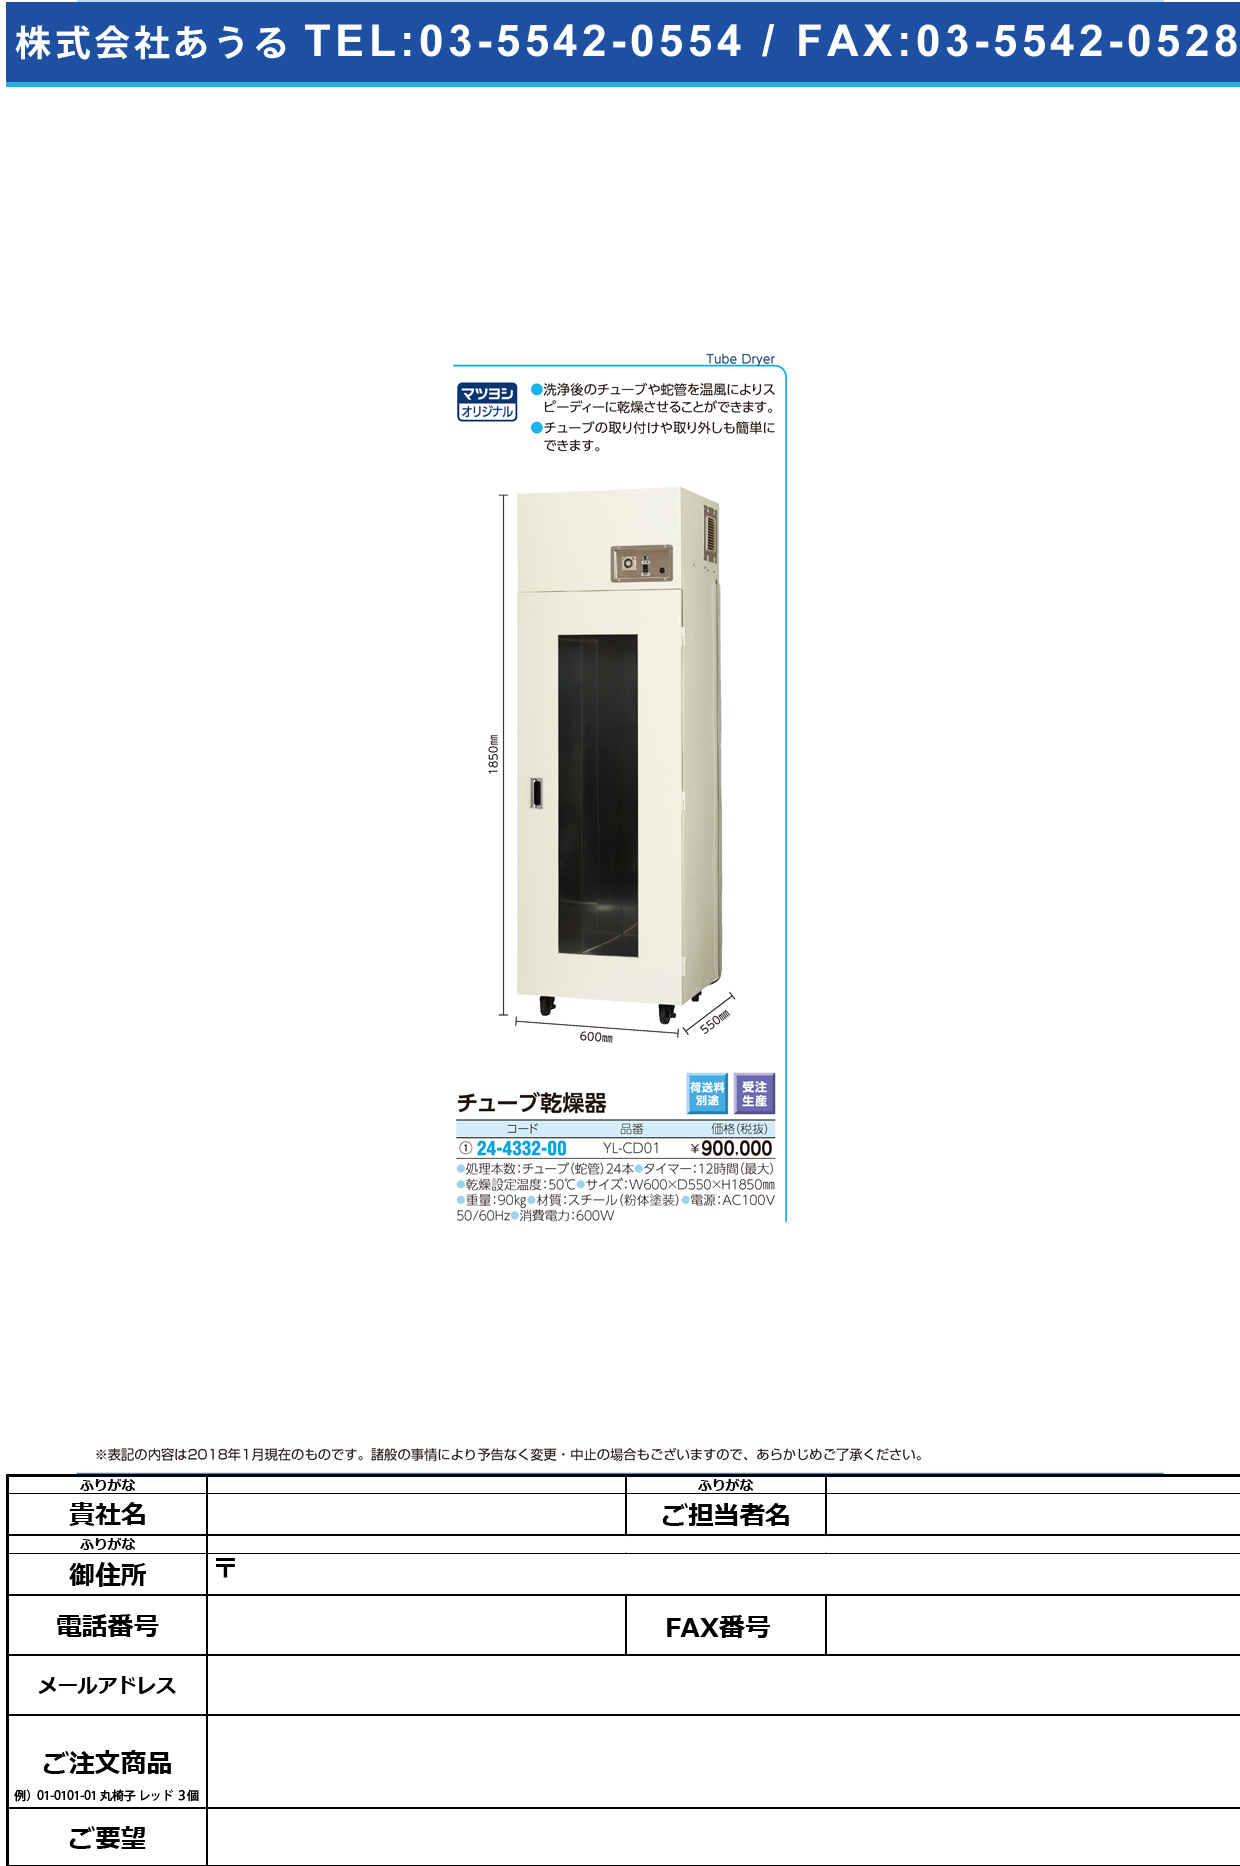 (24-4332-00)チューブ乾燥器 YL-CD01 ﾁｭｰﾌﾞｶﾝｿｳｷ【1台単位】【2019年カタログ商品】